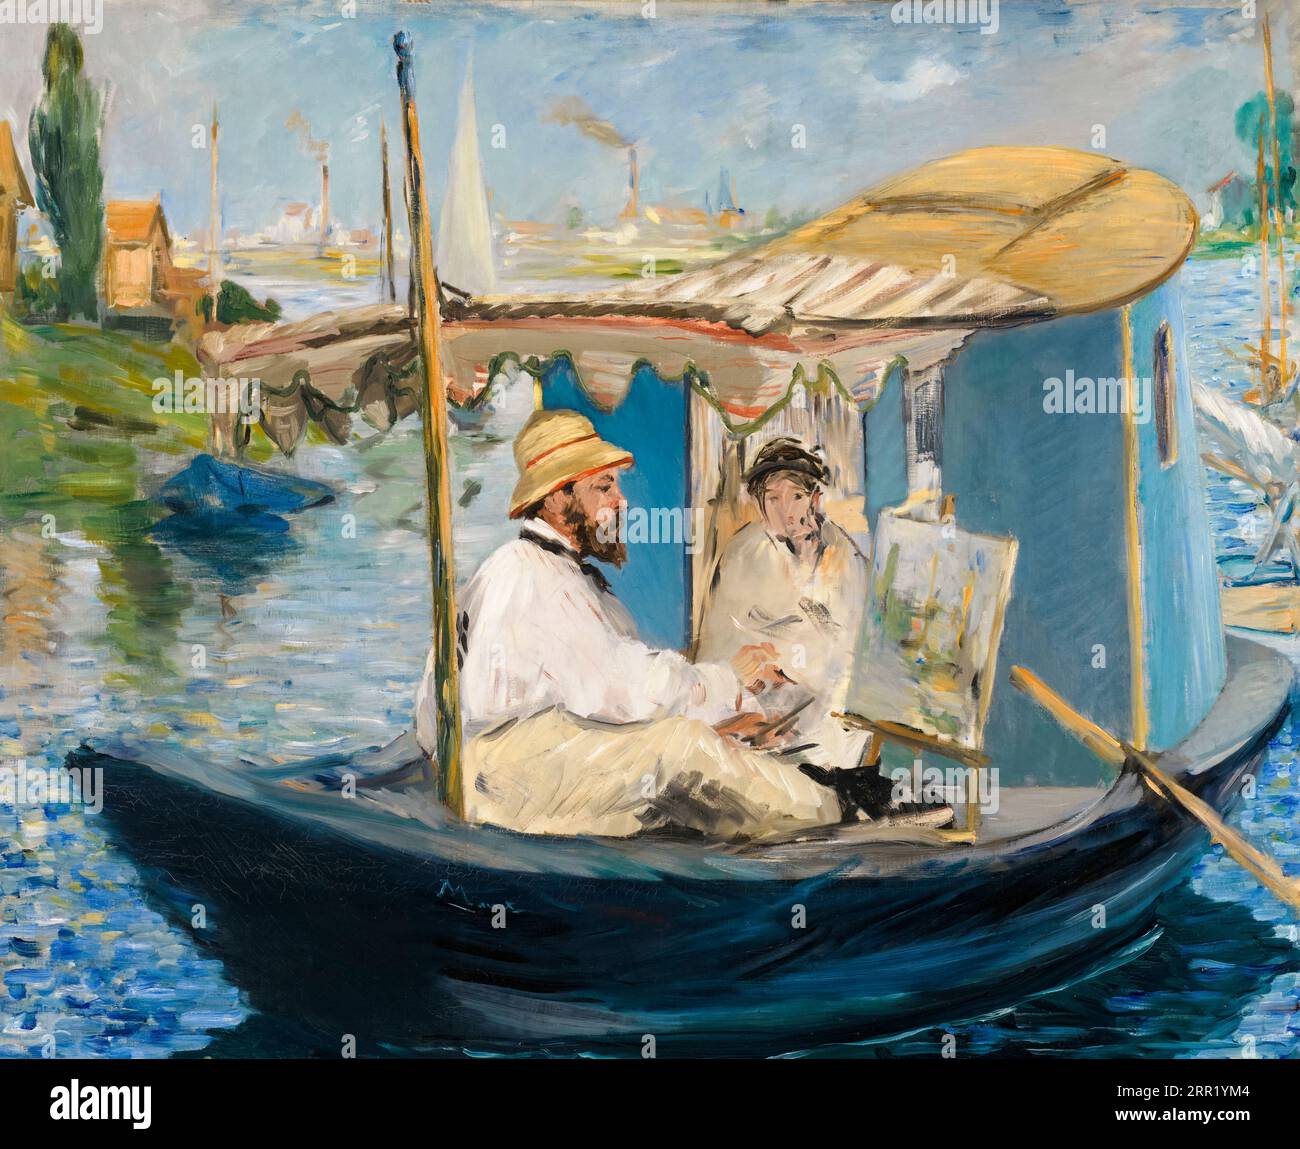 Claude Monet peinture dans son atelier bateau, portrait à l'huile sur toile par Edouard Manet, 1874 Banque D'Images